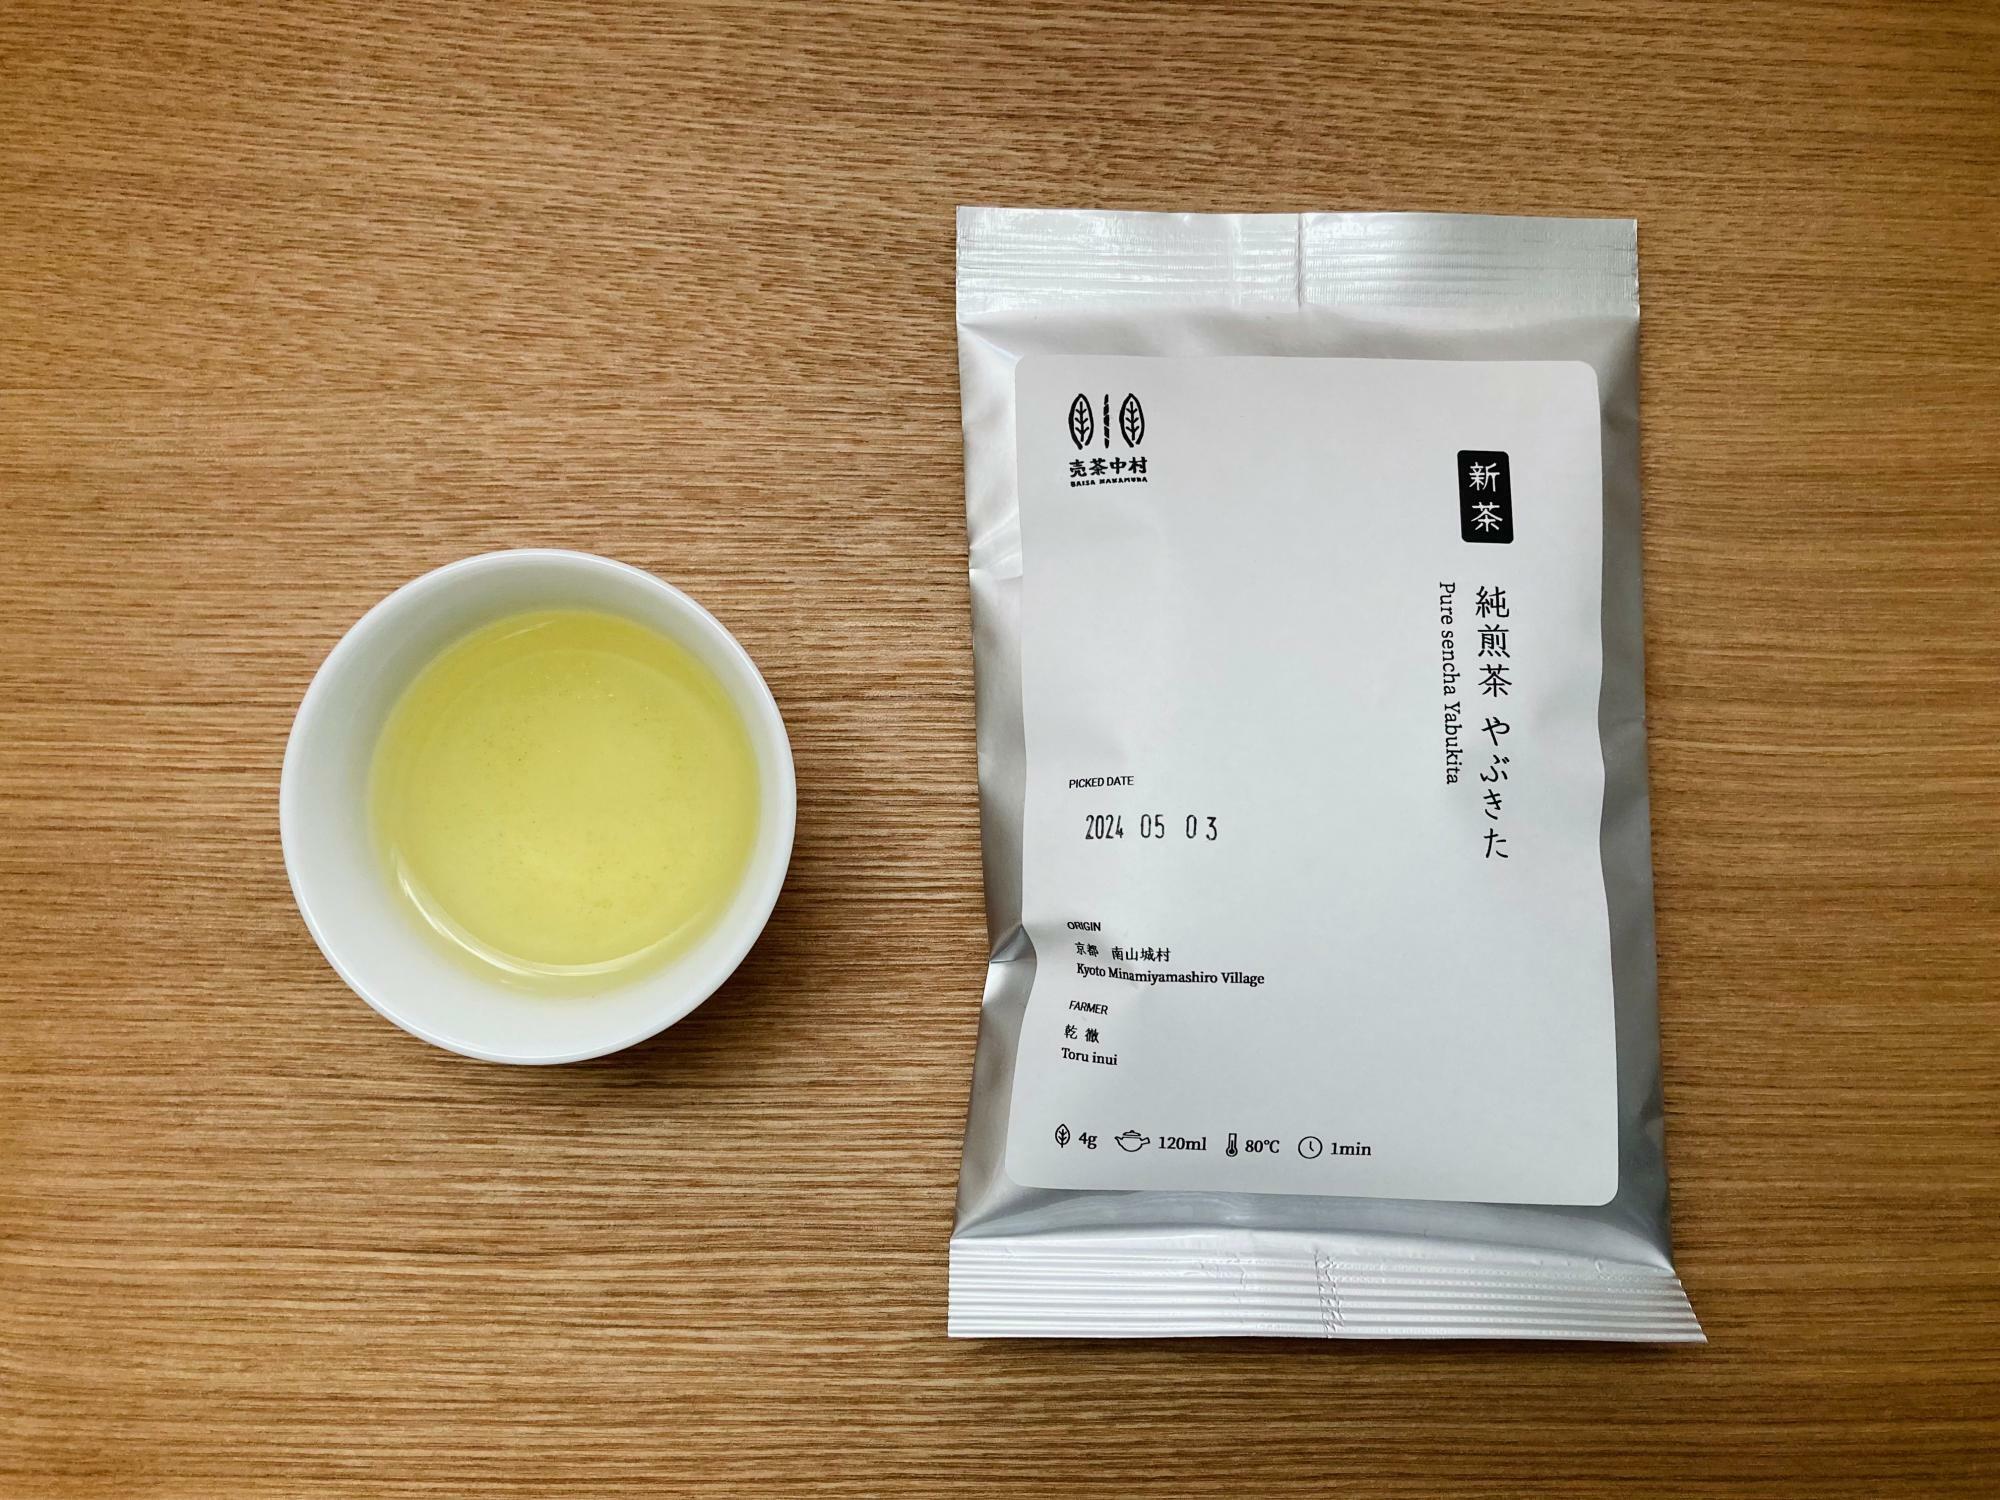 シングルオリジン（単一農園単一品種）の新茶の茶葉「純煎茶やぶきた」は京都府南山城村産。昨年秋にも昨年度産の同じものを飲みましたが、新茶はさわやかな香りで軽やかなお茶に仕上がっています。